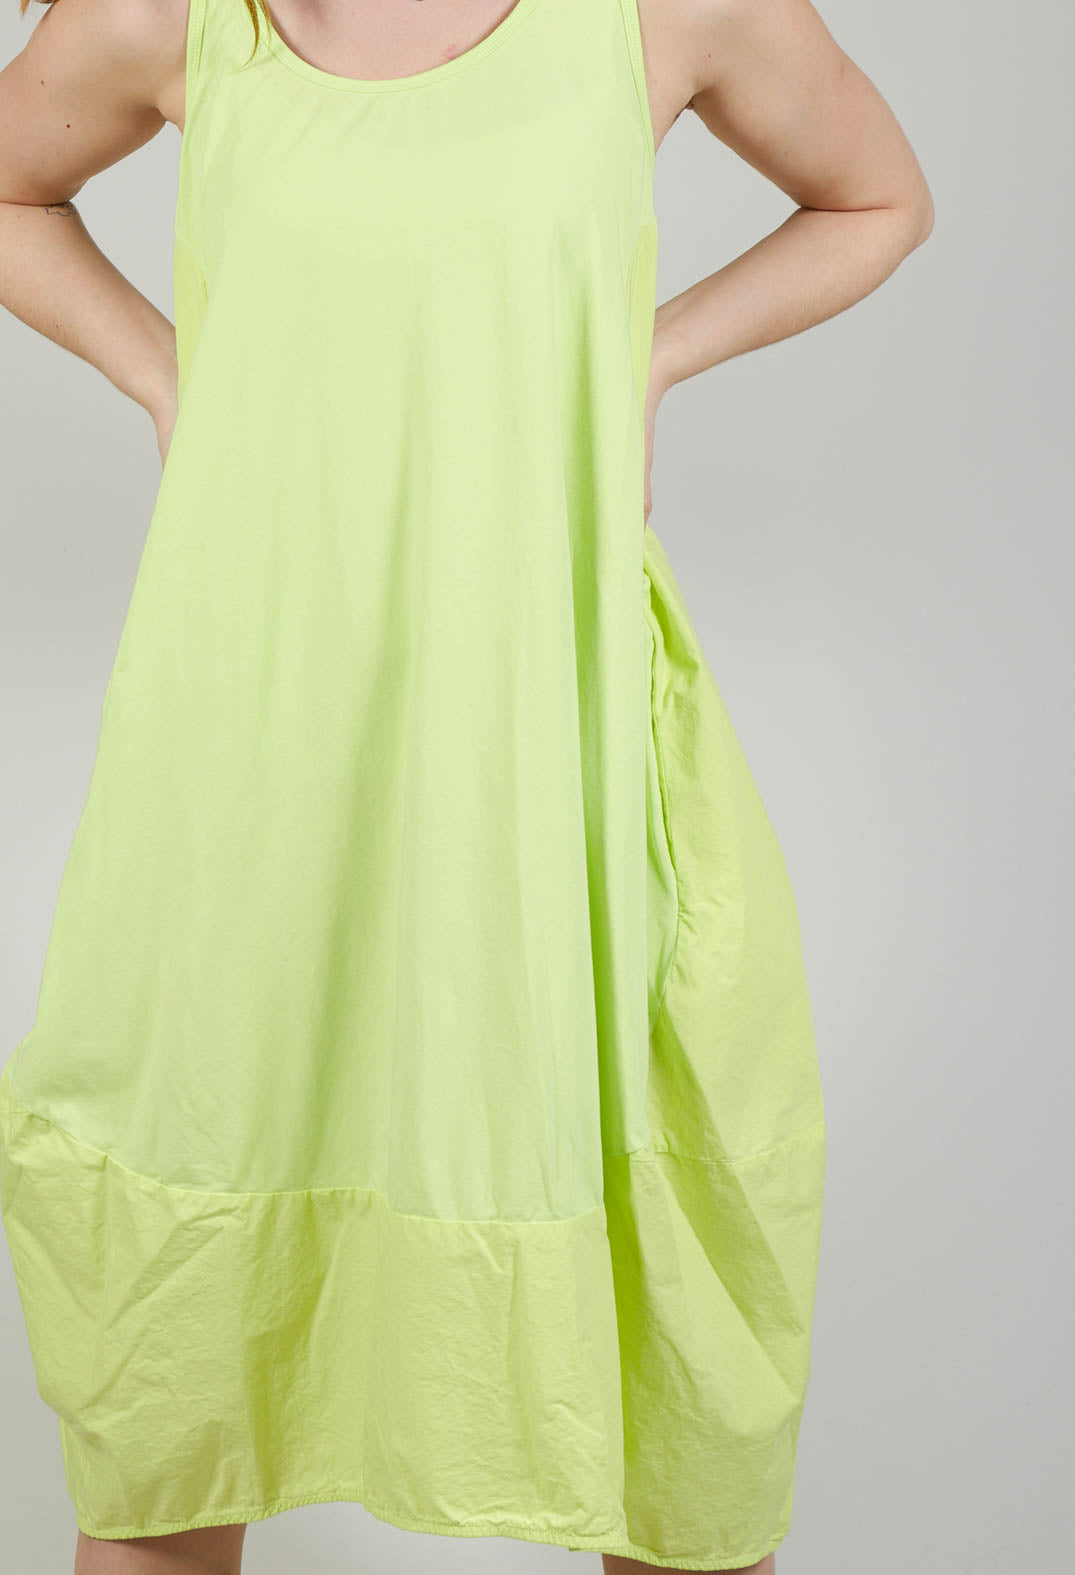 Dual Fabric Sleeveless Dress in Sun